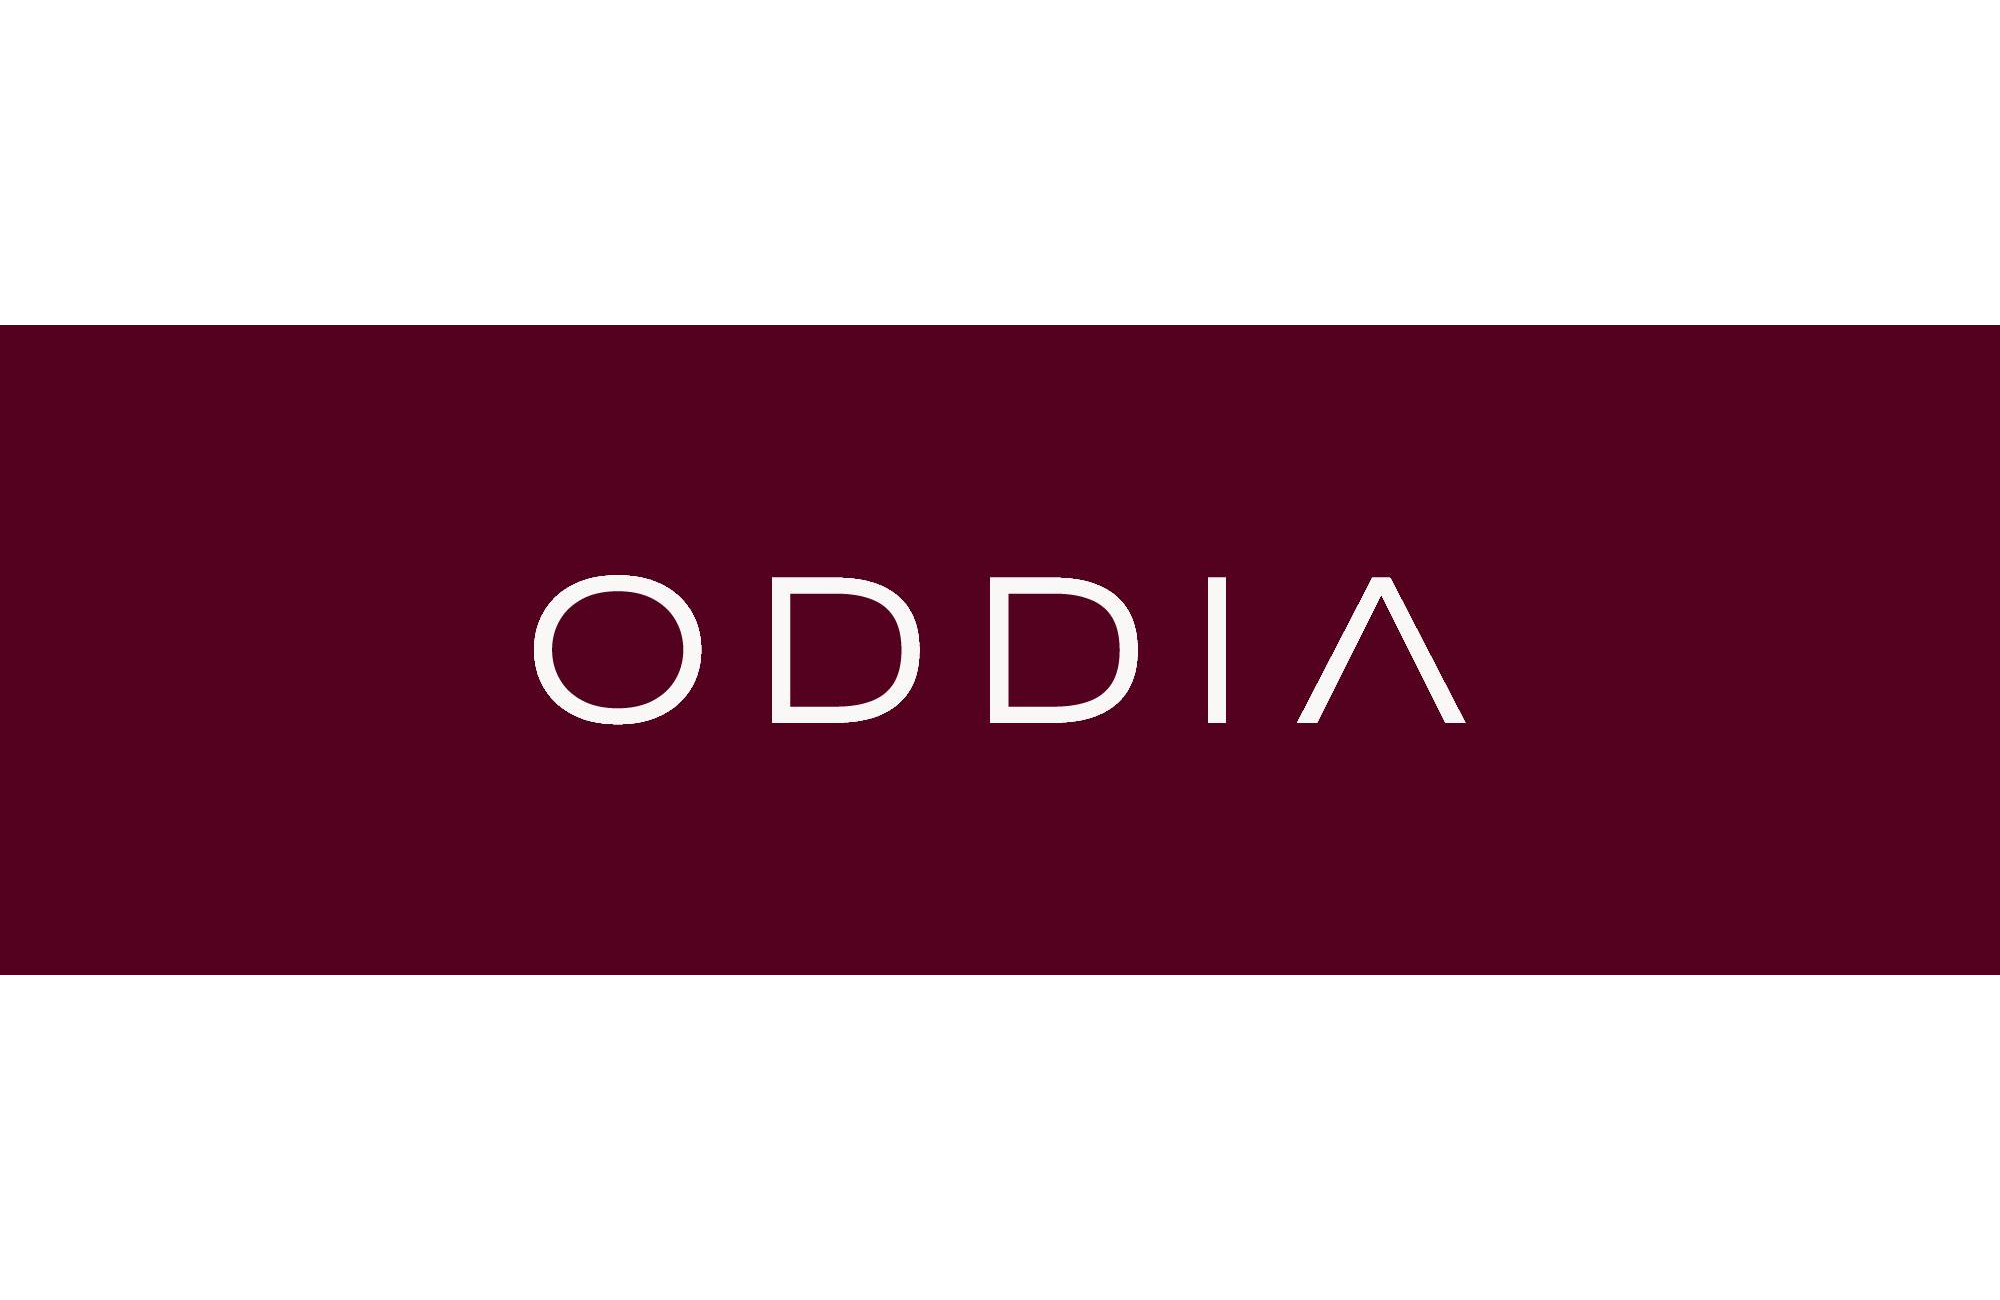 Oddia®  Men's latex pants and leggings